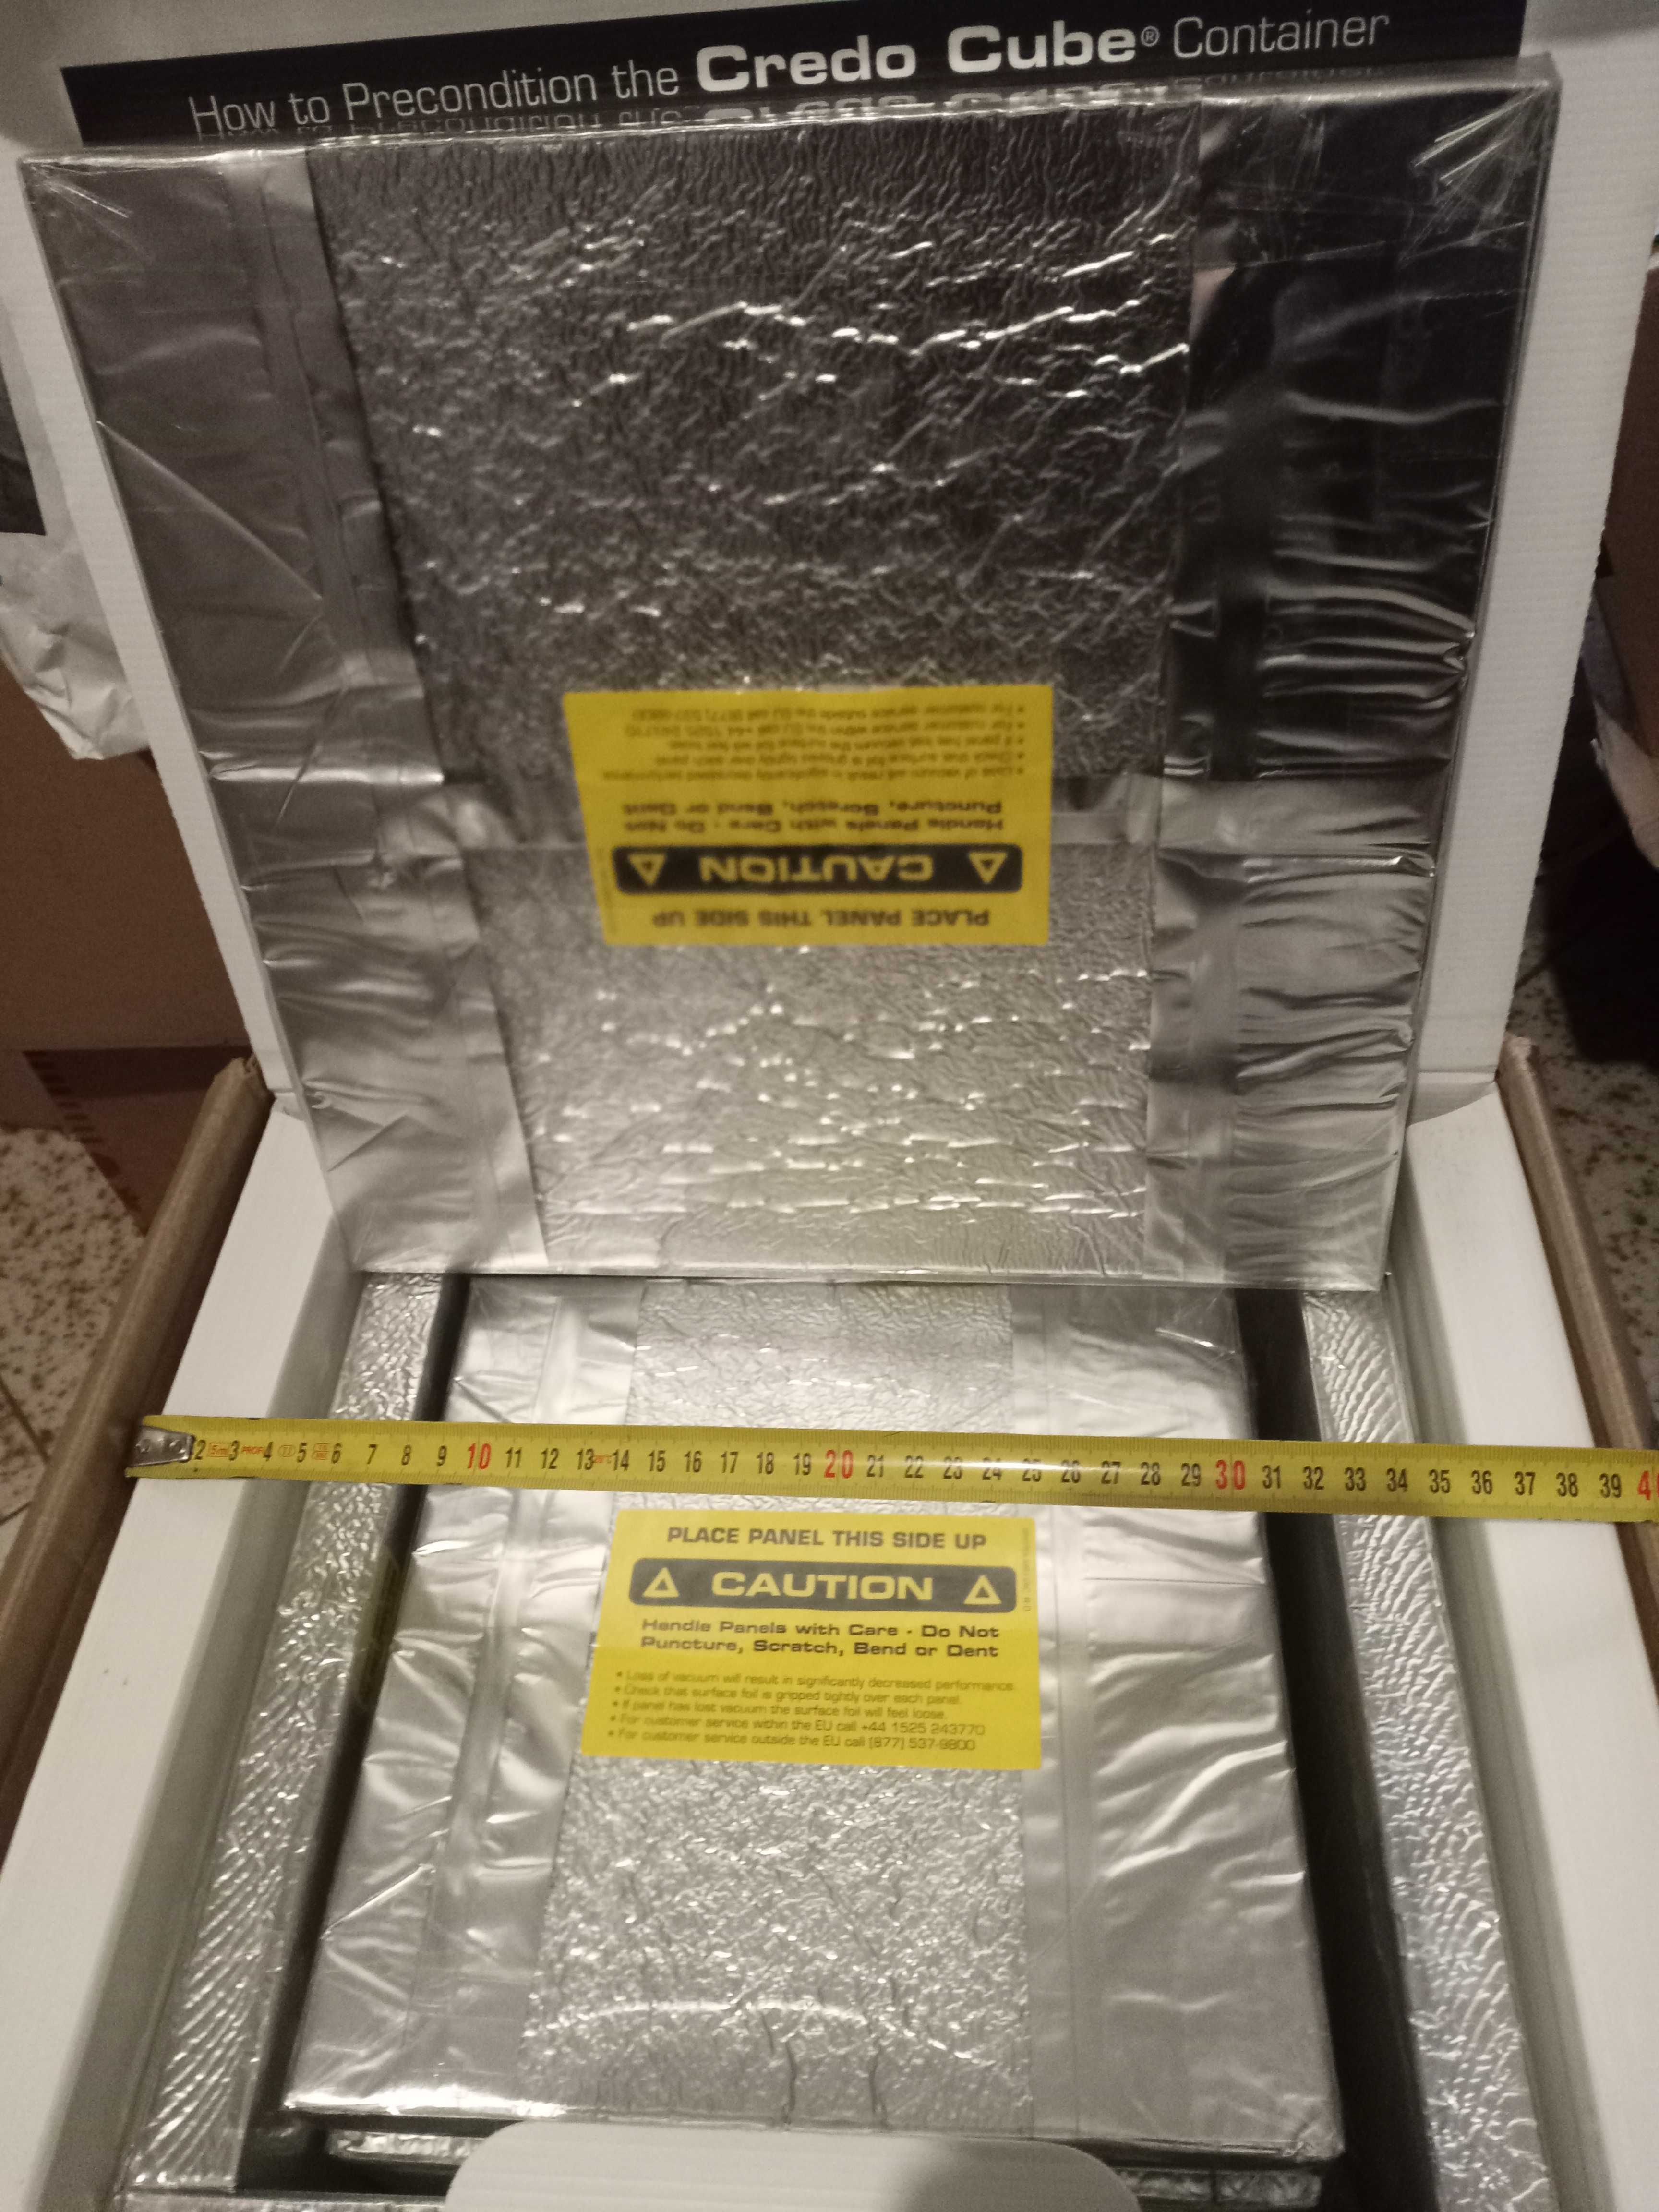 Специализирана хладилна кутия  с хладилни елементи към нея